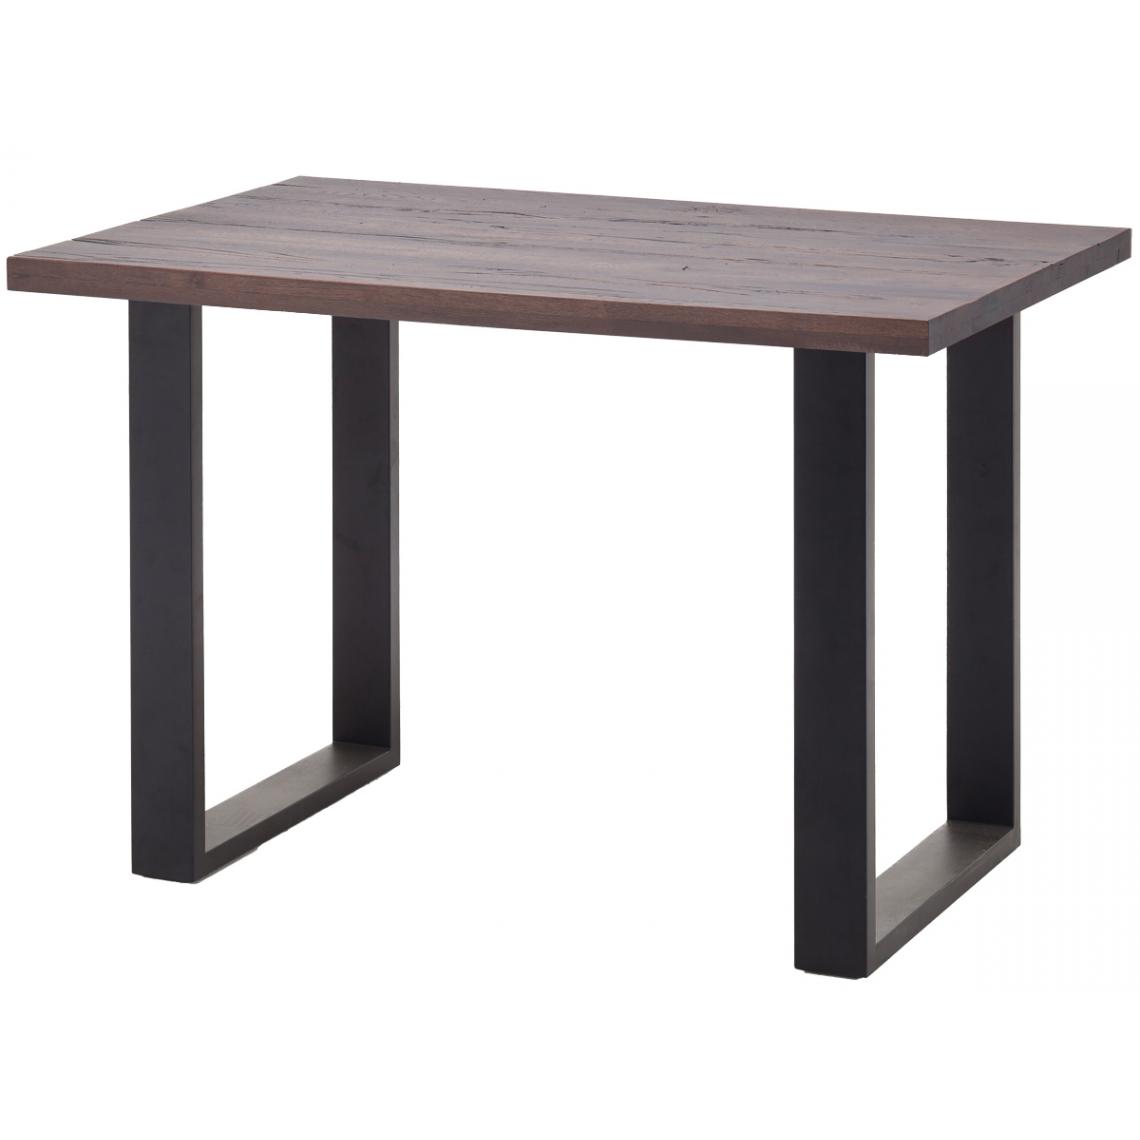 Pegane - Table haute en chêne tanner et métal laqué anthracite - Longueur 160 x Hauteur 107 x Profondeur 100 cm - Tables à manger